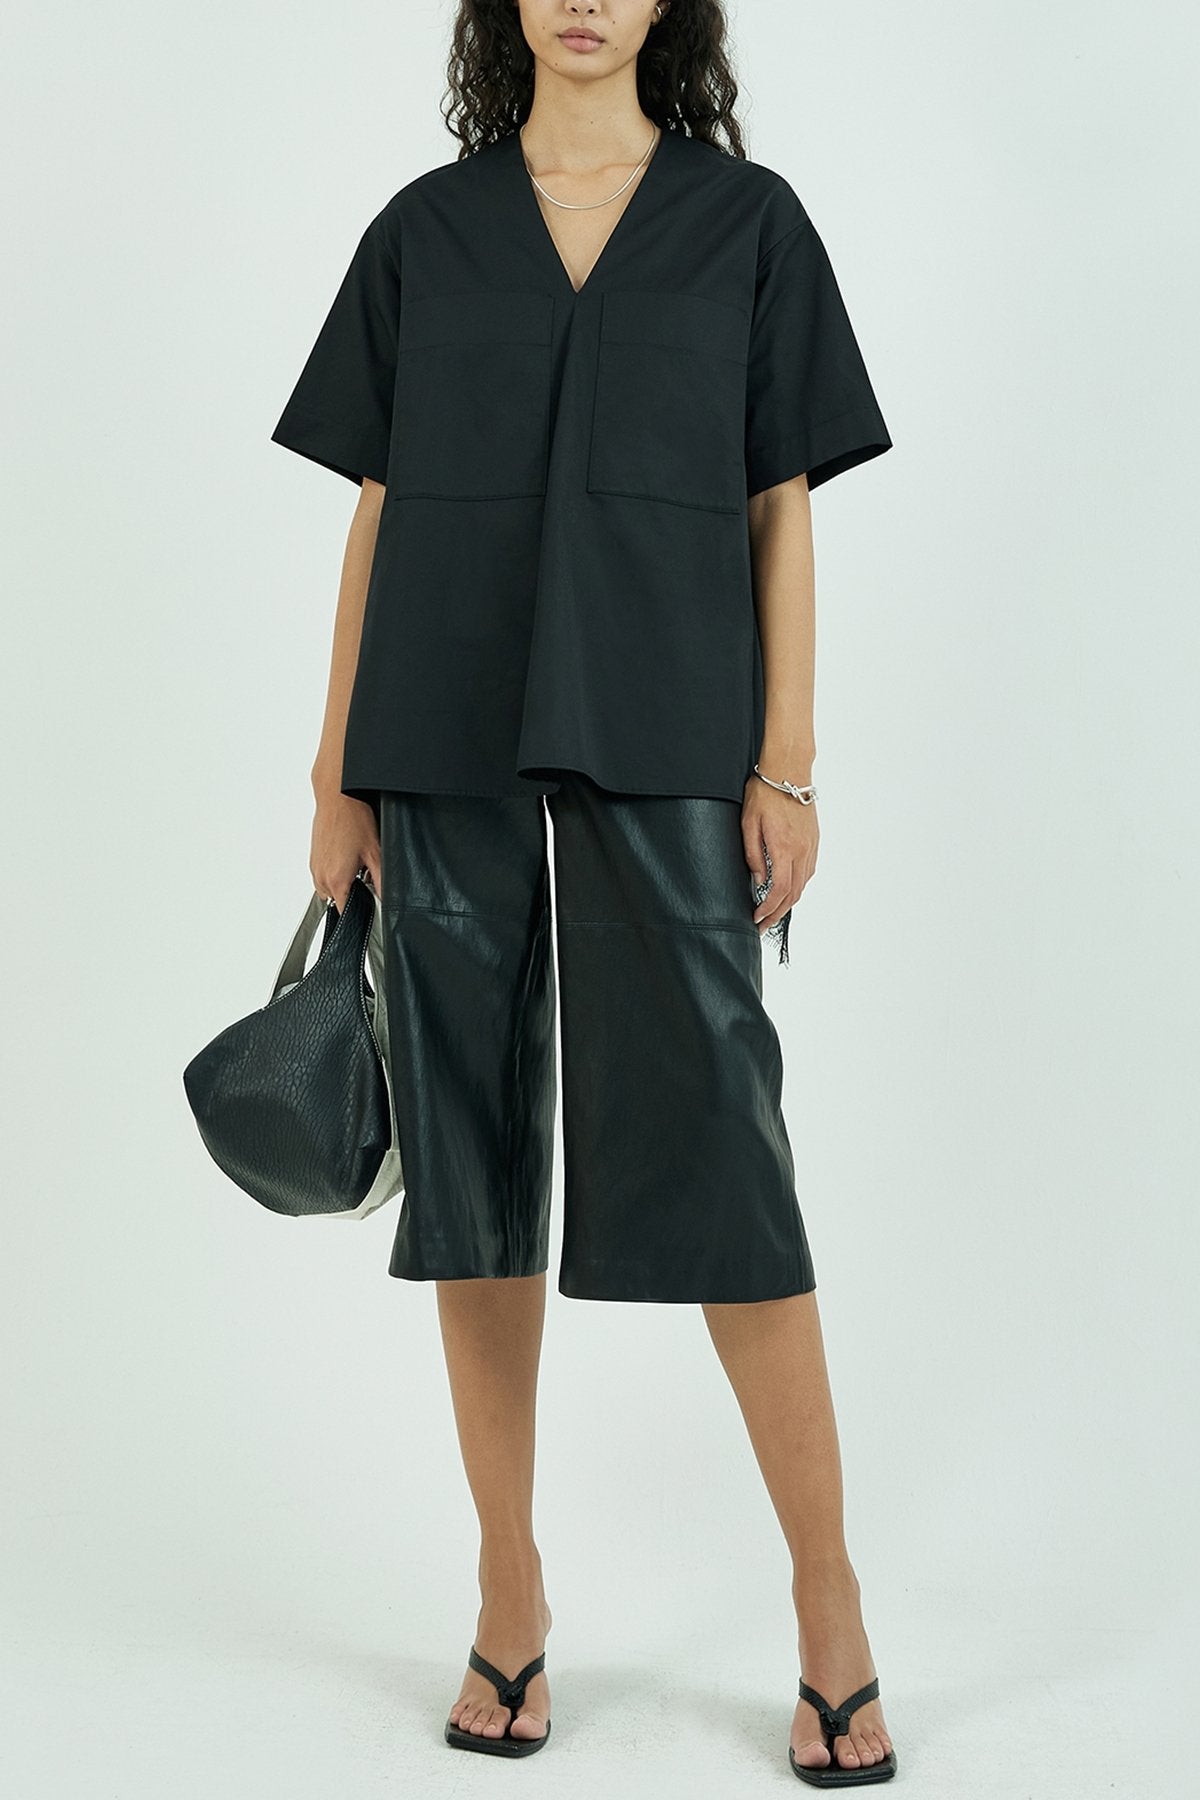 Embellished Lace Trimmed Short Sleeve Blouse in Black - shop-olivia.com